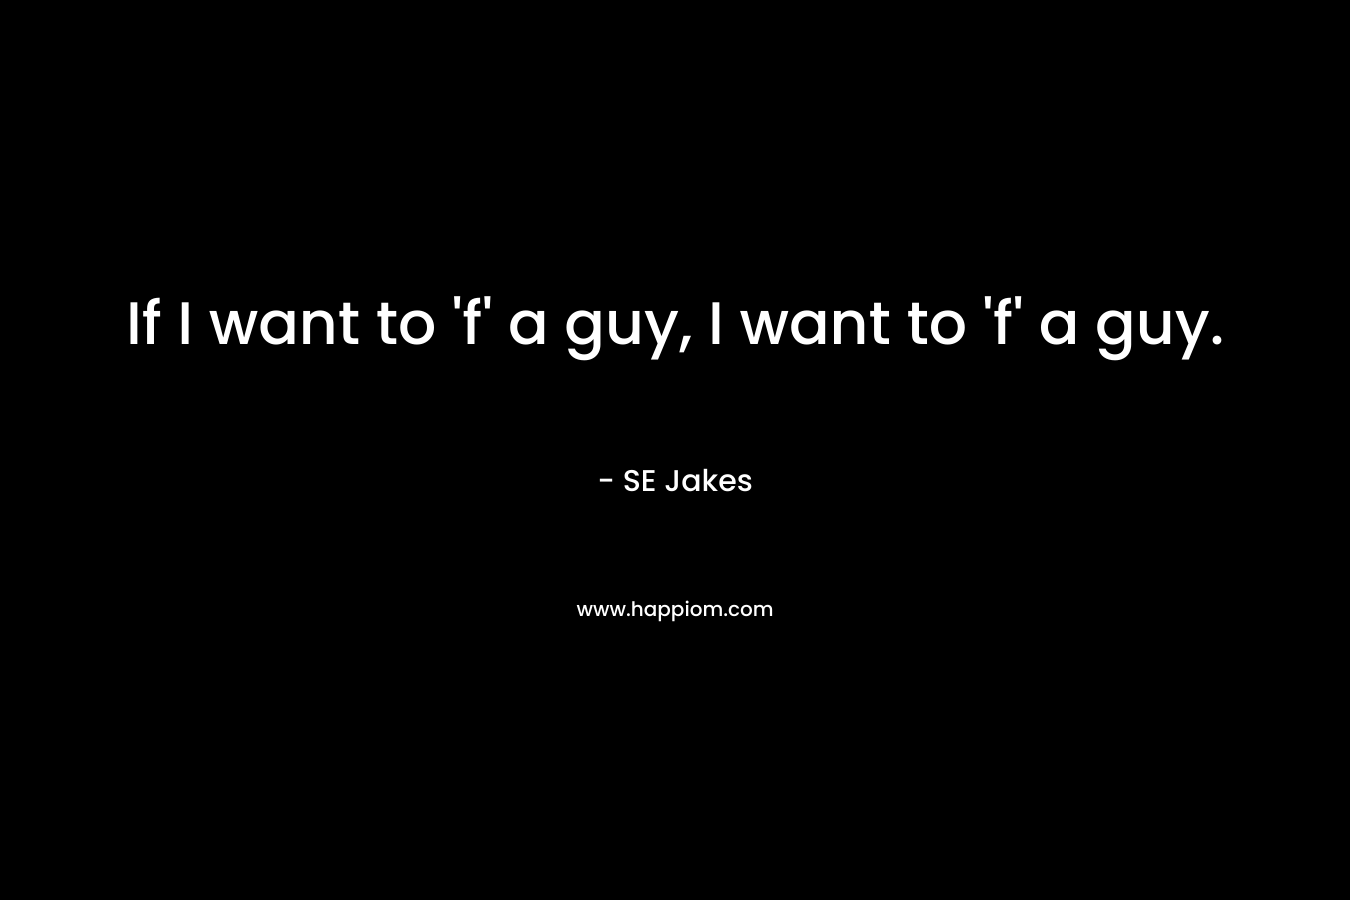 If I want to 'f' a guy, I want to 'f' a guy.